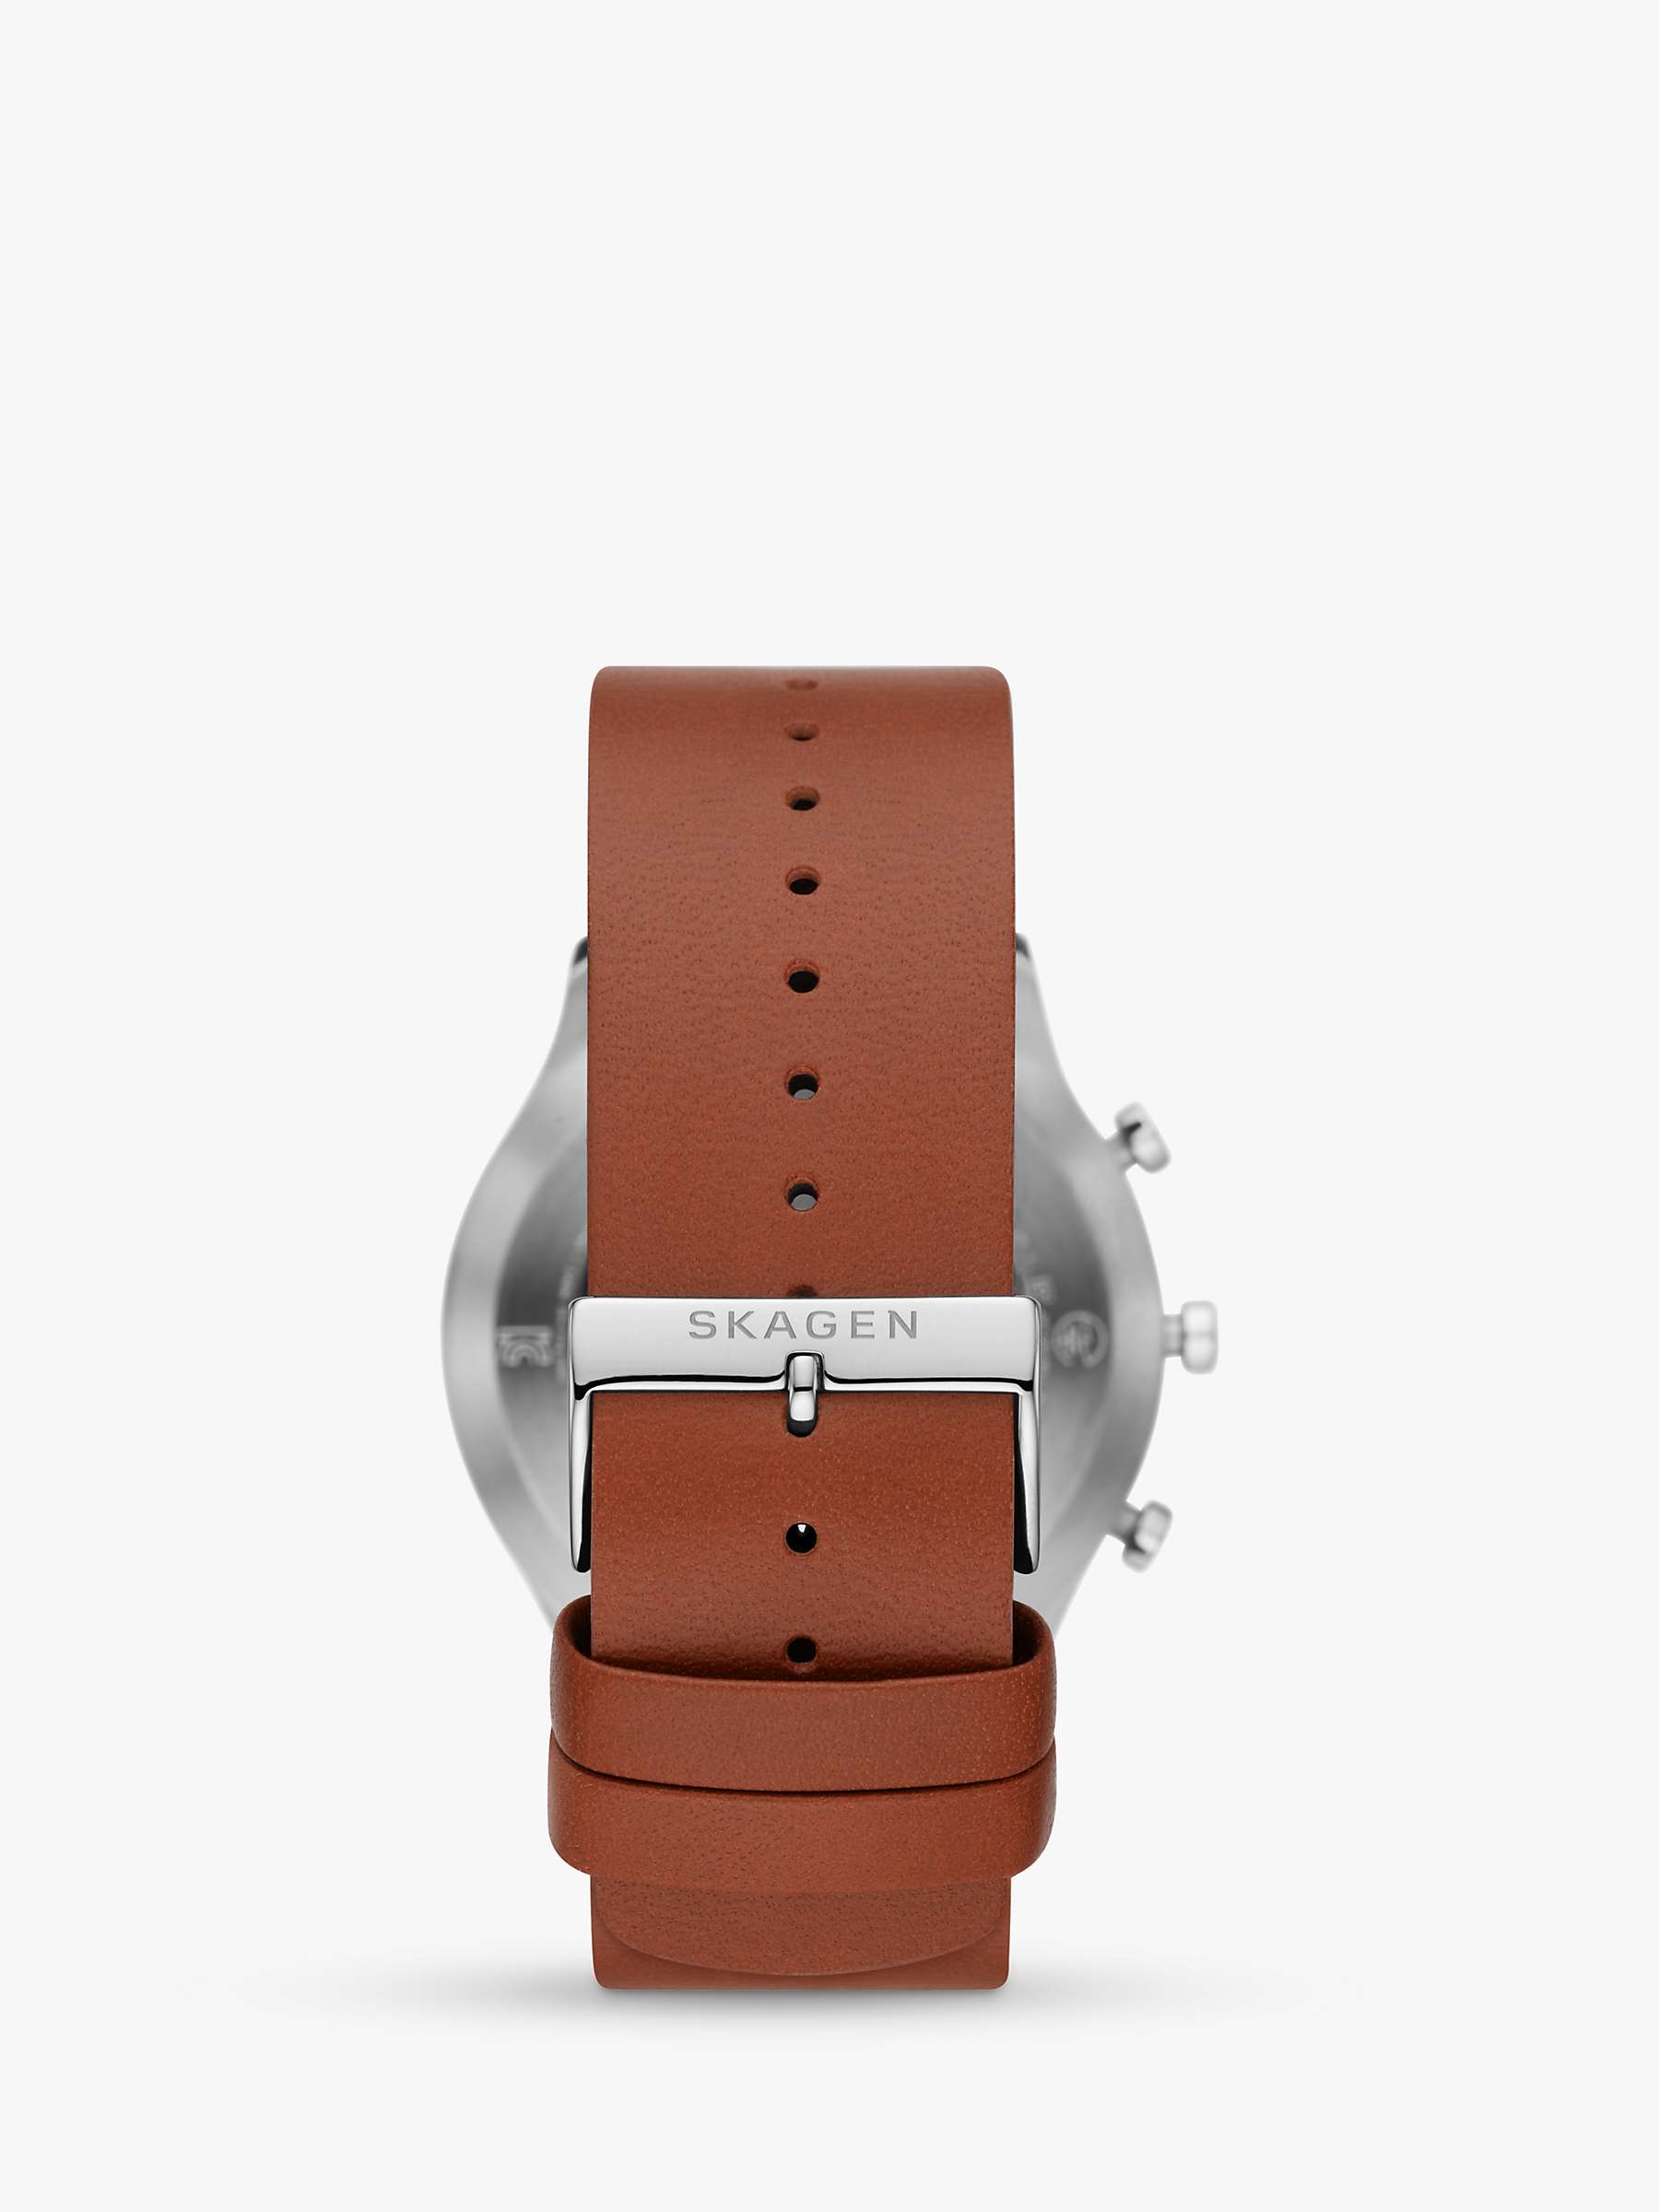 Buy Skagen SKT3000 Men's Leather Strap Smartwatch, Tan/Black Online at johnlewis.com